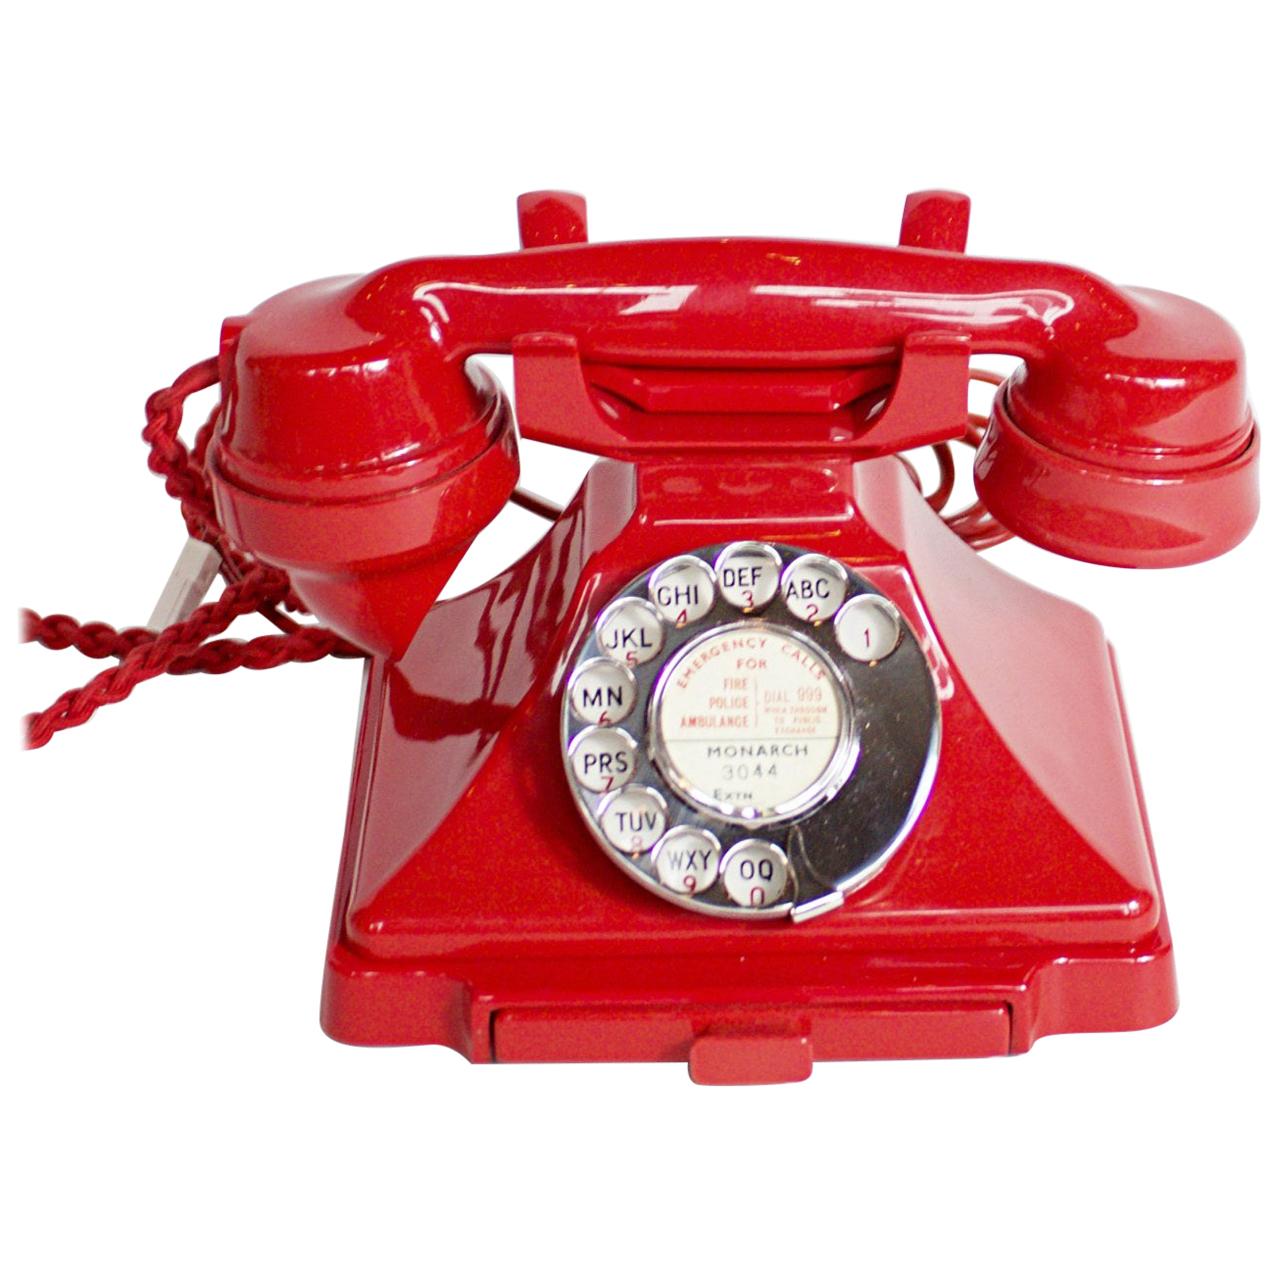 Original, Rare GPO Model 232 Chinese Red Bakelite Telephone, circa 1956